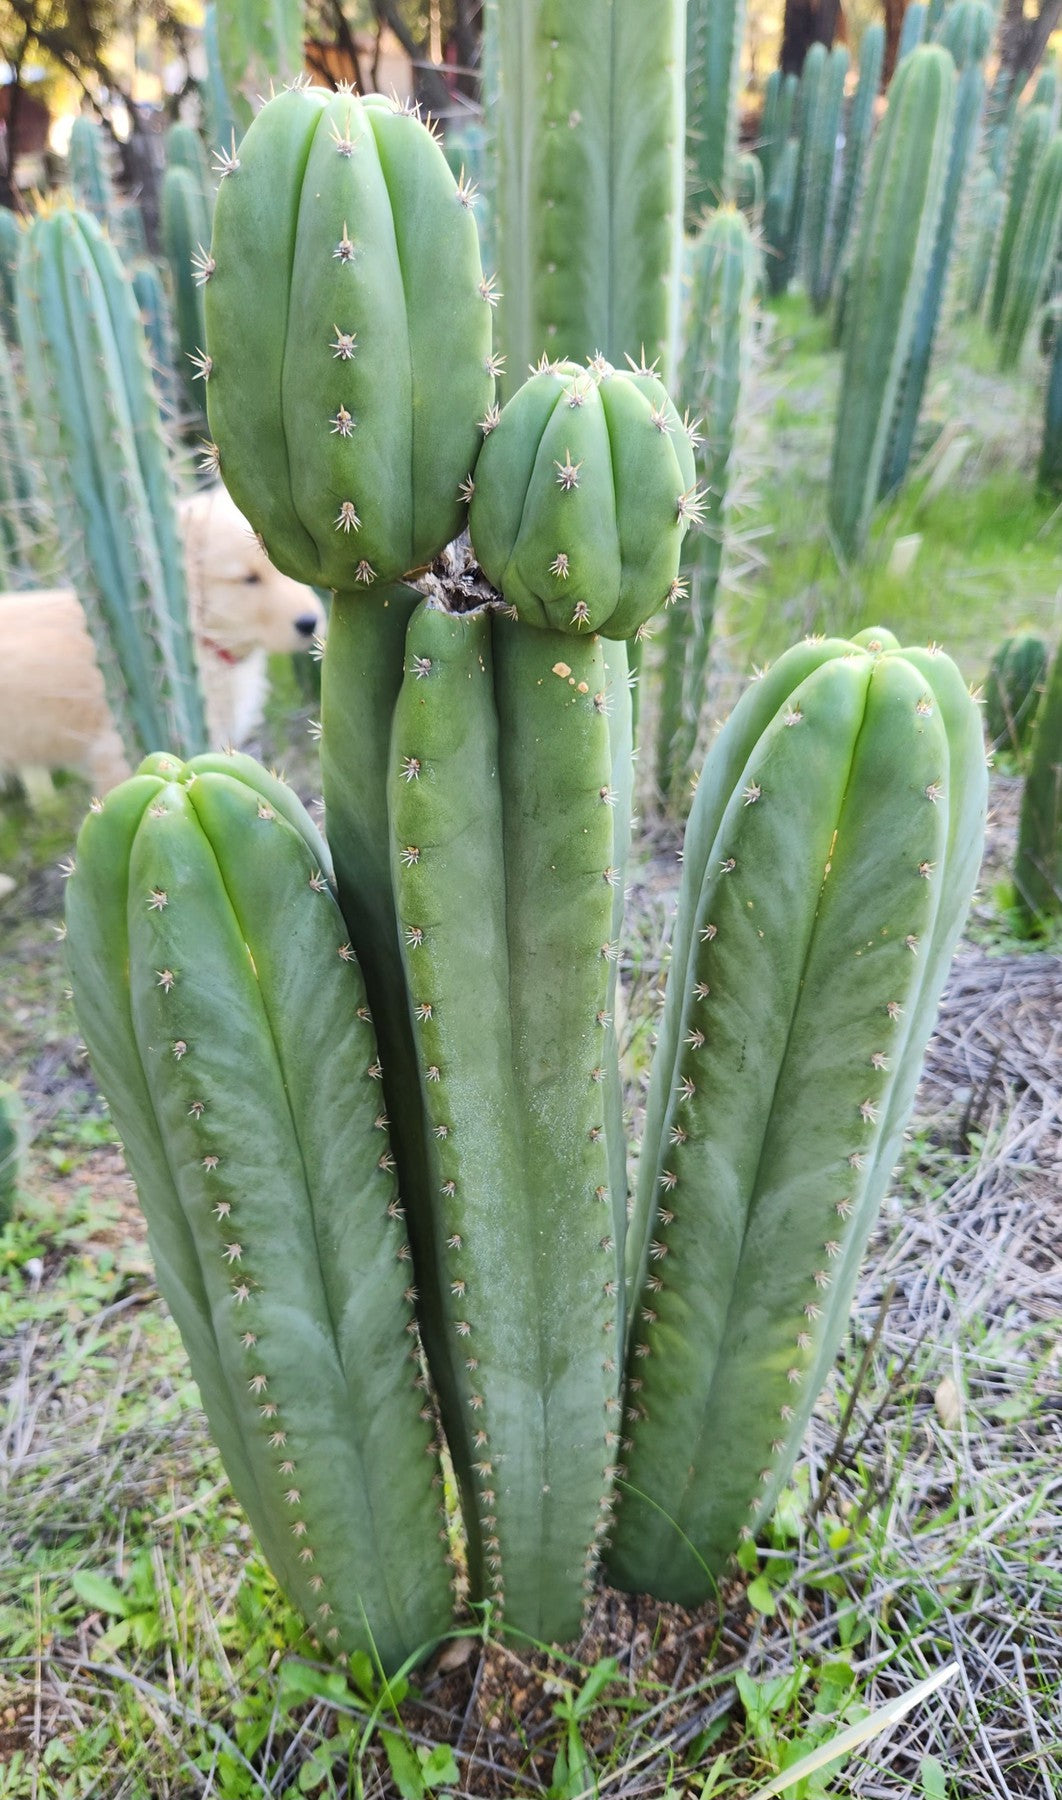 #EC314 EXACT Trichocereus Hybrid Scopulicola X Bridgesii KGC Cactus Cutting 8"-Cactus - Large - Exact-The Succulent Source